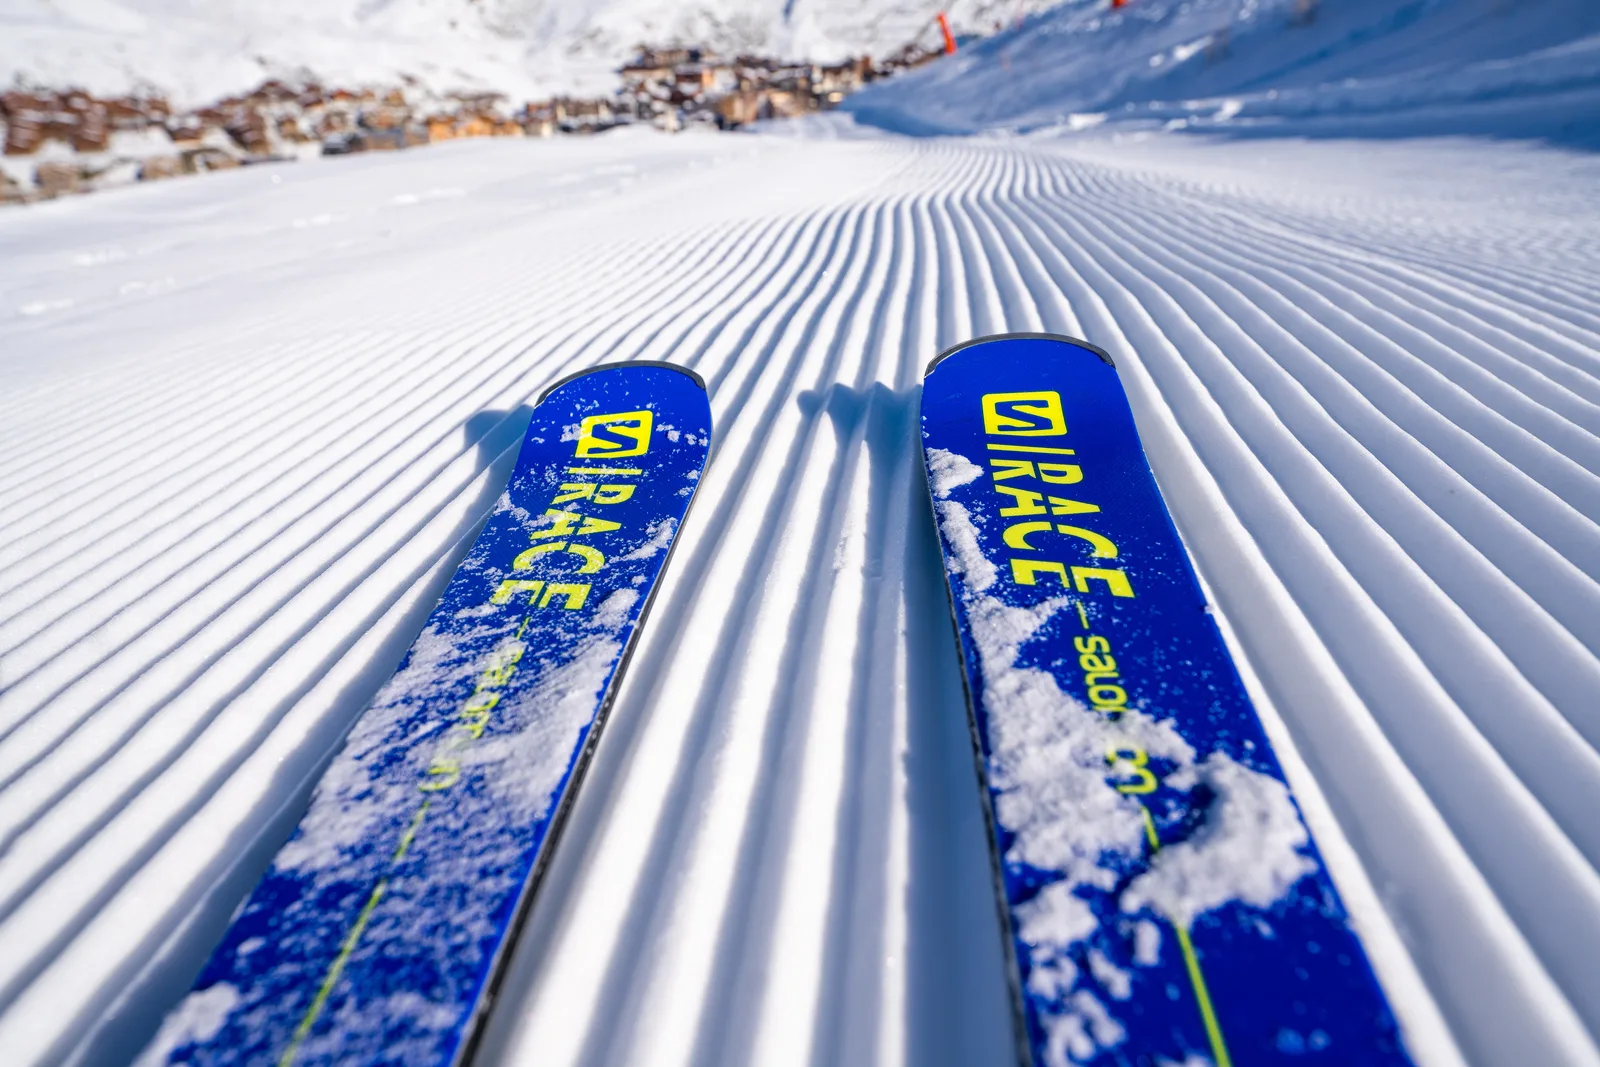 Esquiar en pistas acondicionadas